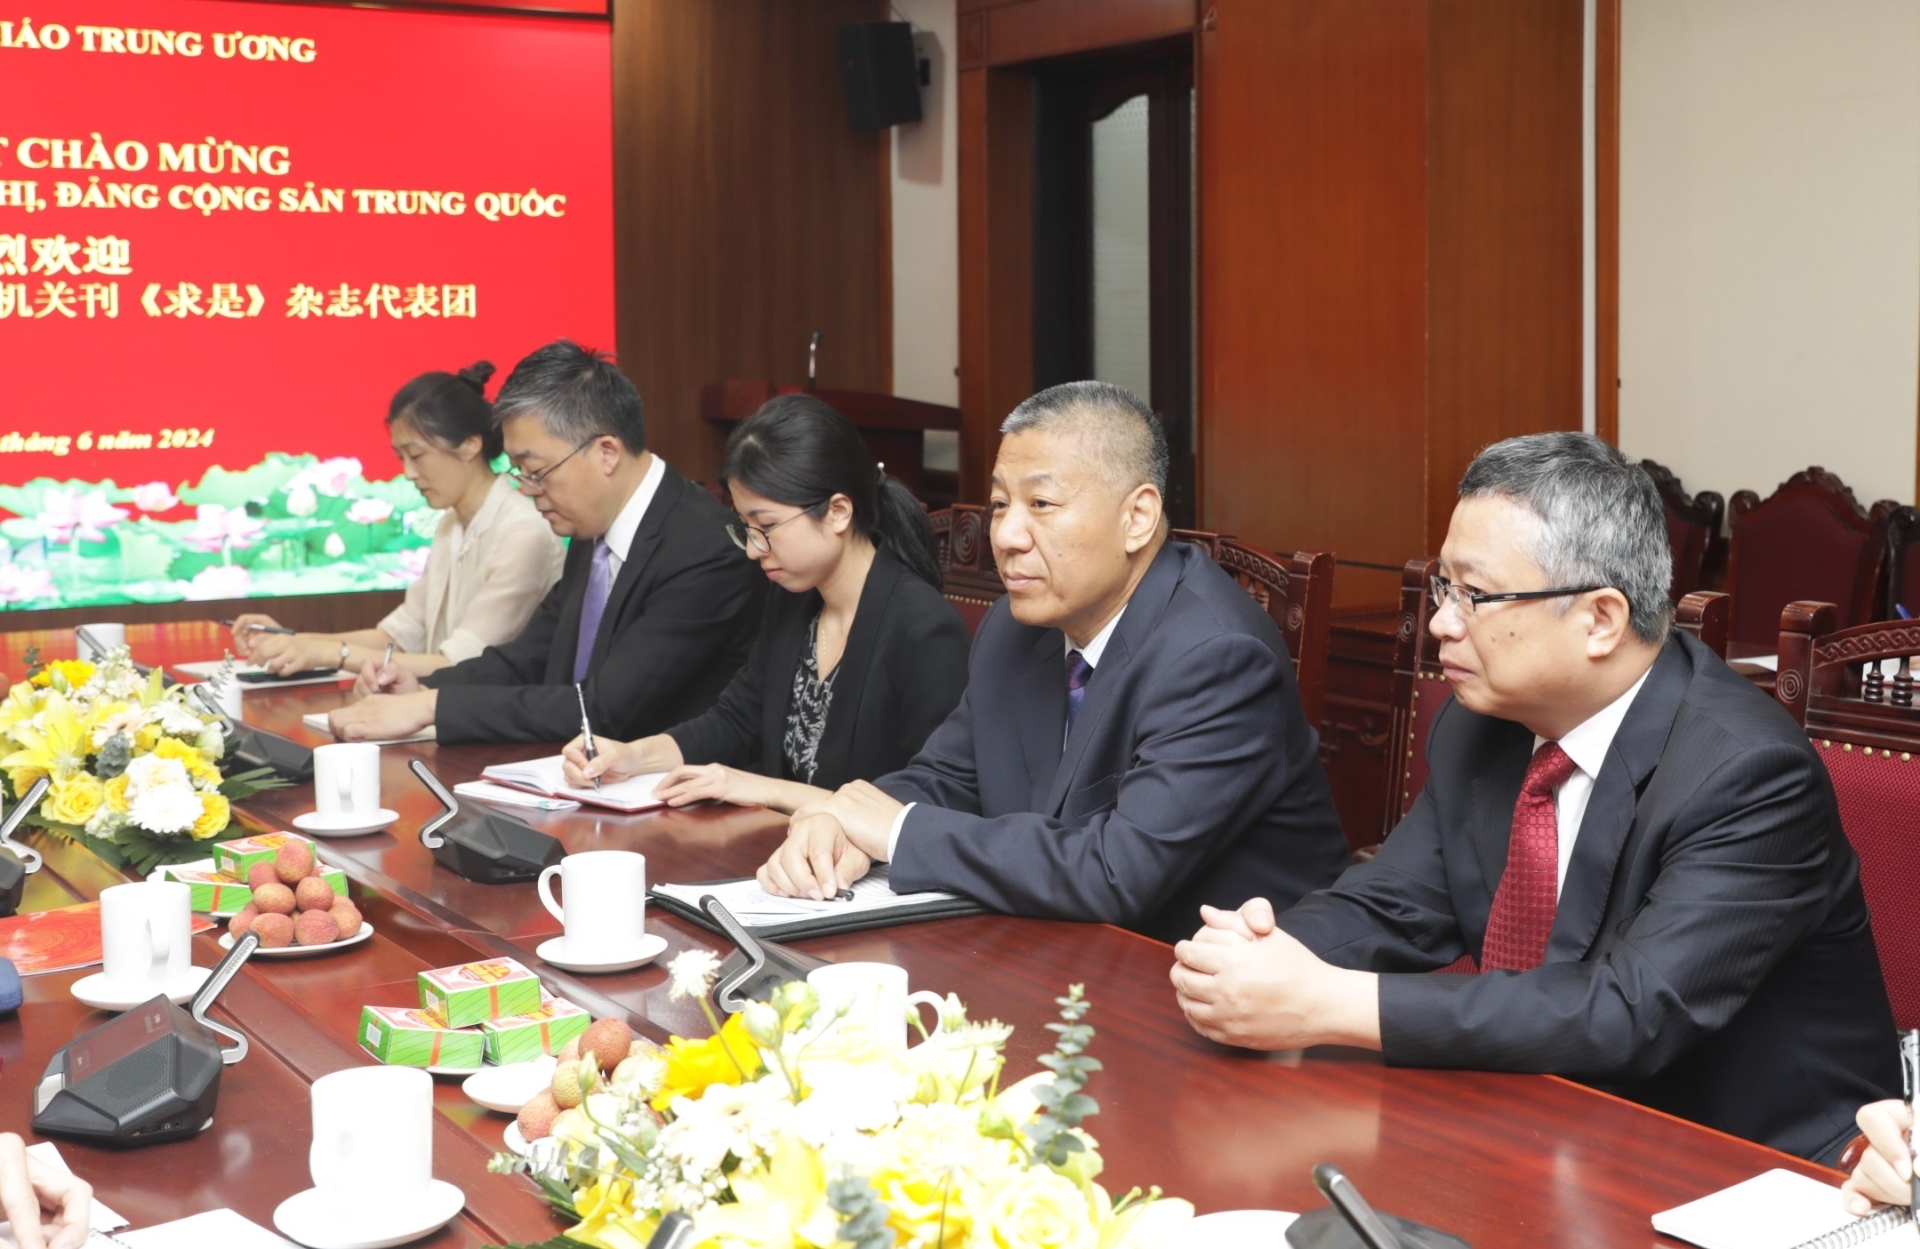 Đoàn đại biểu Tạp chí Cầu Thị, cơ quan lý luận của Đảng Cộng sản Trung Quốc tại buổi làm việc.